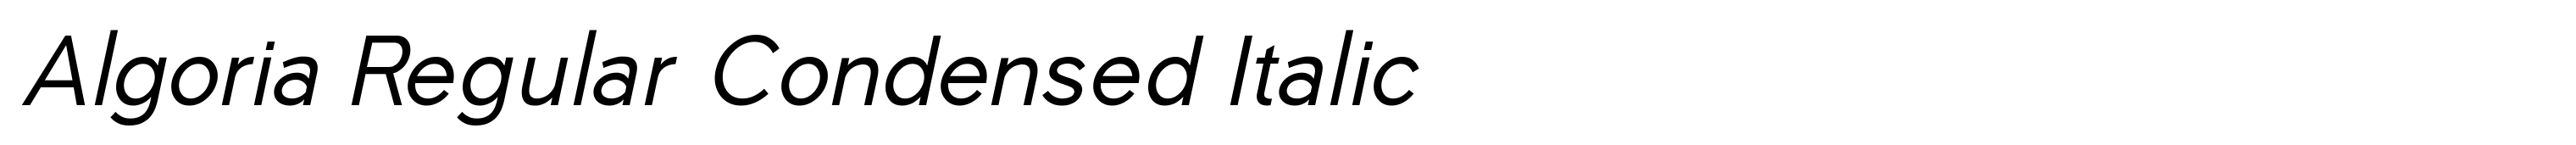 Algoria Regular Condensed Italic